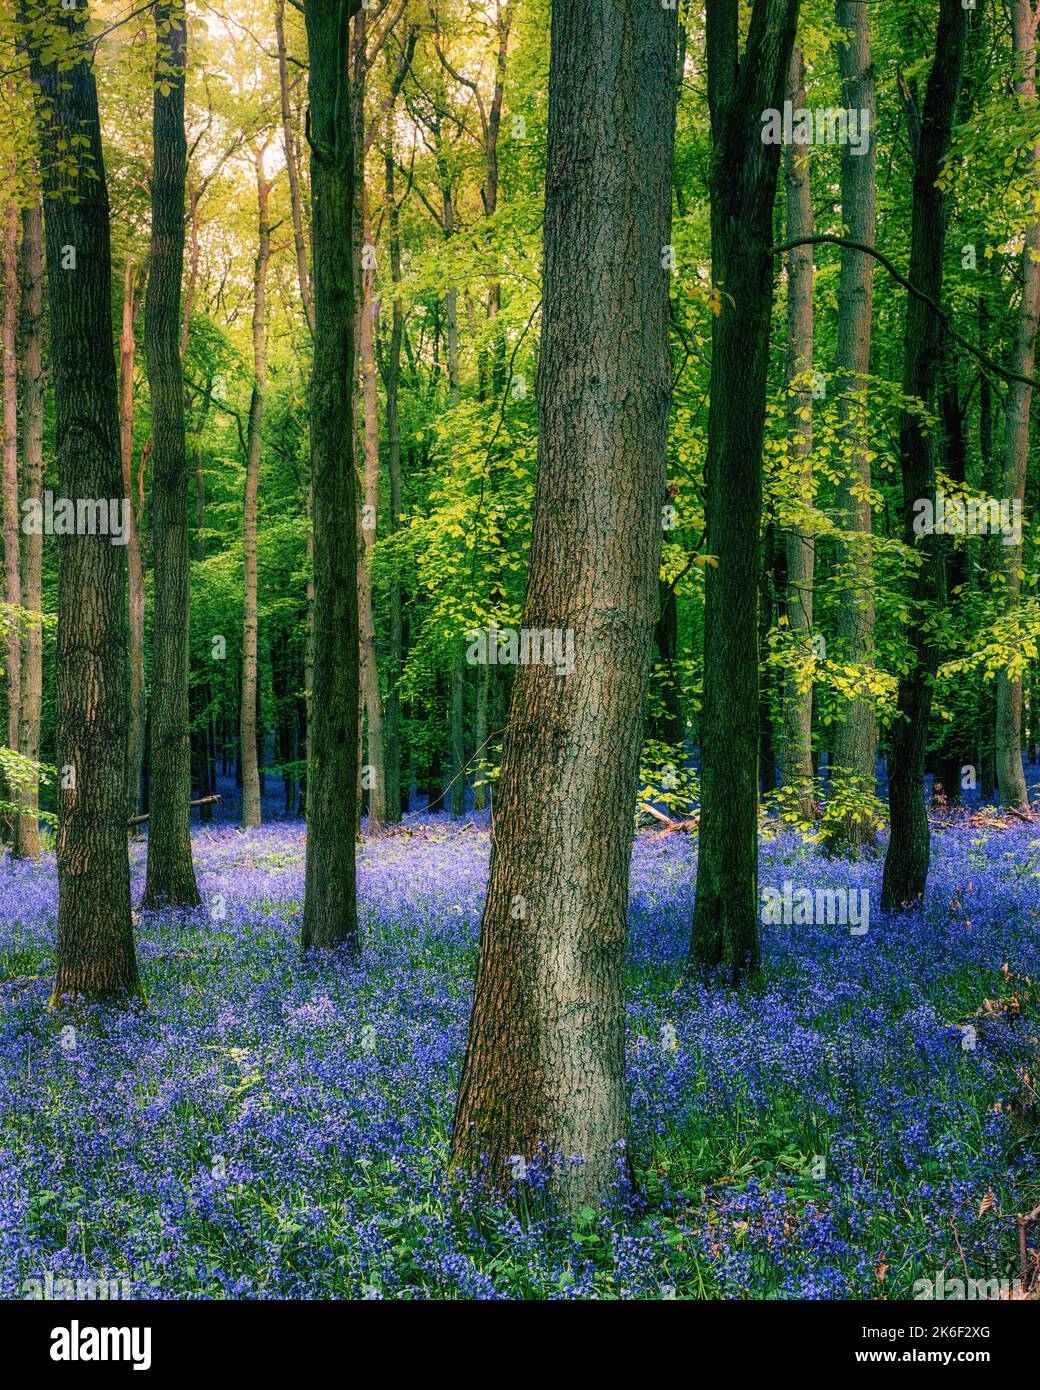 Un cliché vertical de cloches communes (jacinthoides non-scripta) et d'arbres à Dockey Wood, Ashridge Estate, Royaume-Uni Banque D'Images